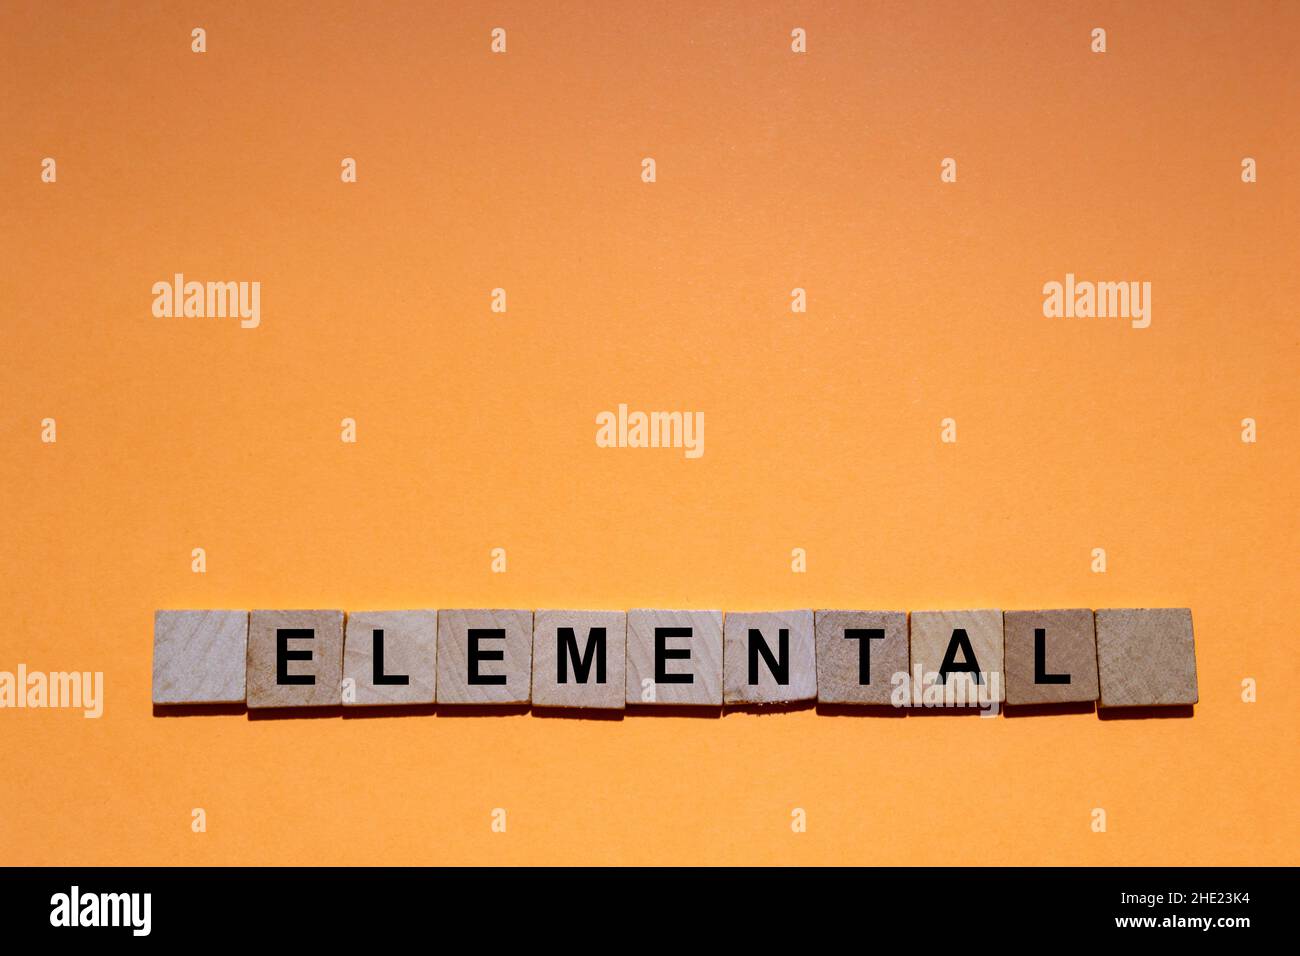 ELEMENTARE. Parola scritta su piastrelle quadrate di legno con sfondo arancione. Fotografia orizzontale. Foto Stock